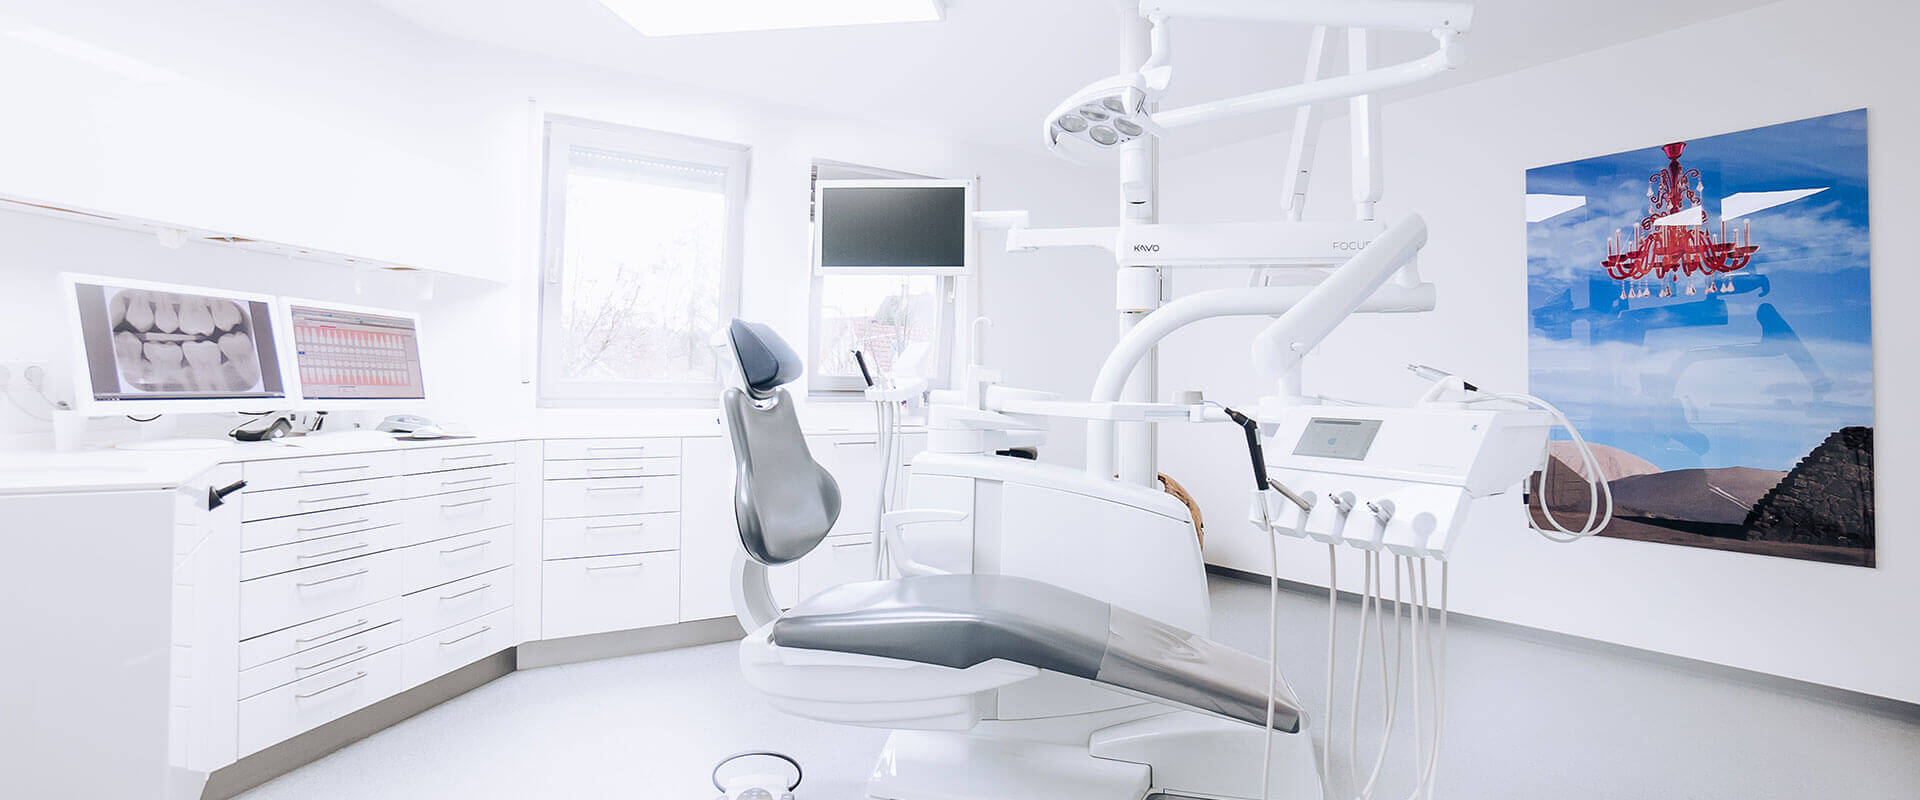 Dentalprax Behandlungszimmer